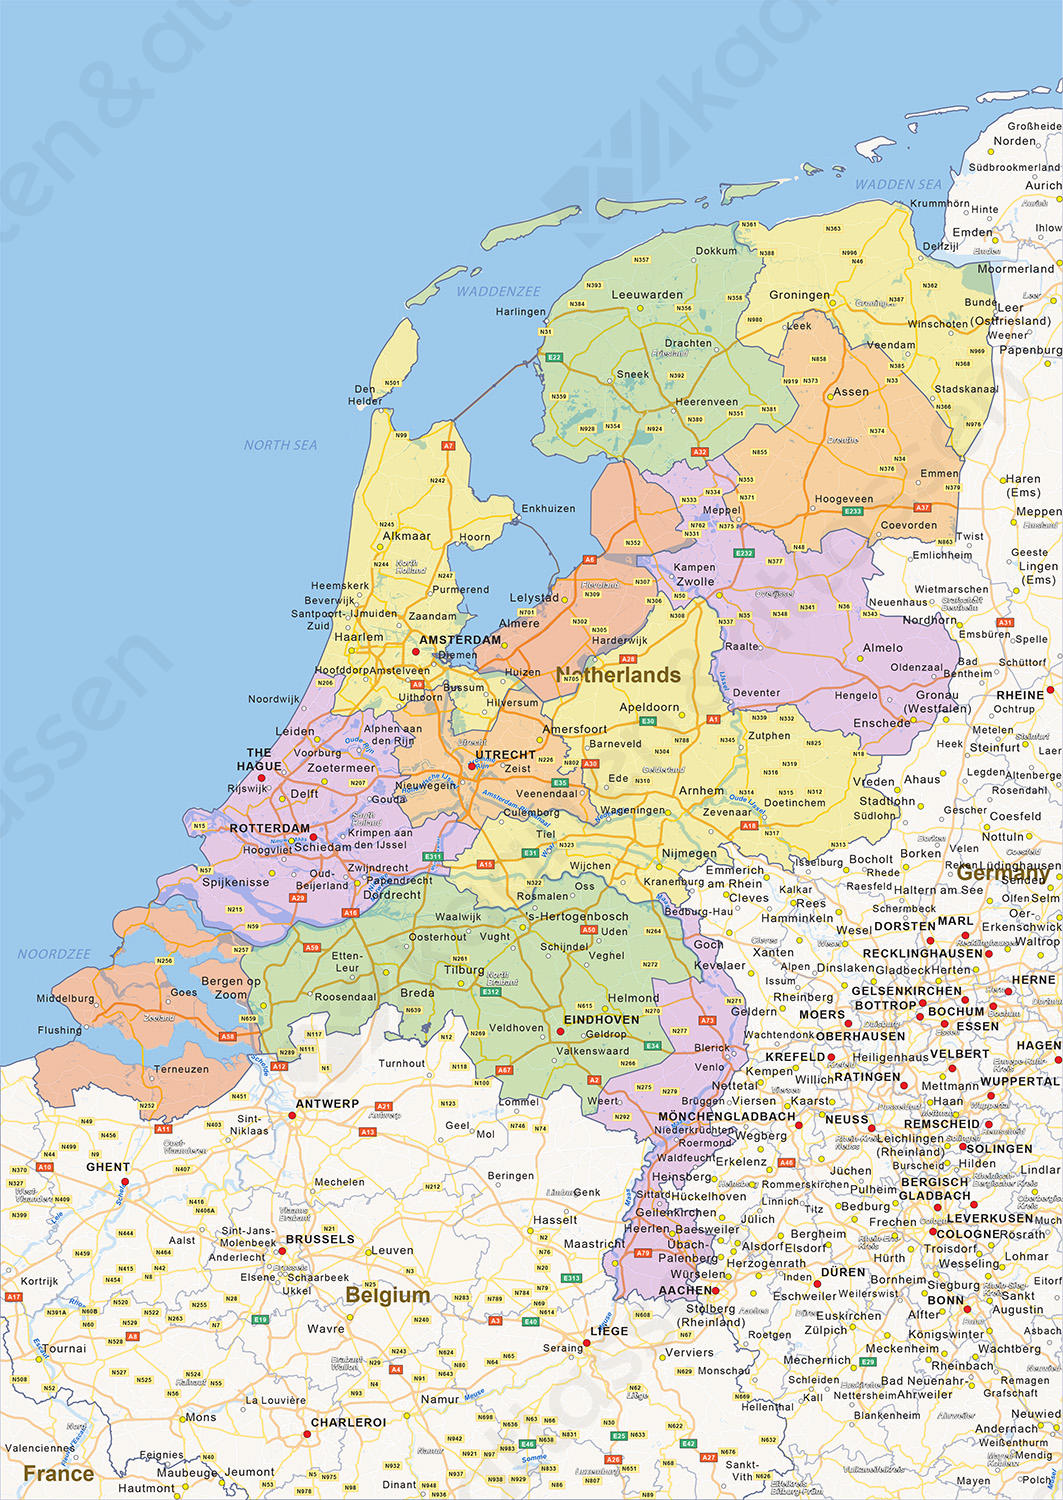 broeden Badkamer type Digitale Staatkundige landkaart Nederland 1452 | Kaarten en Atlassen.nl